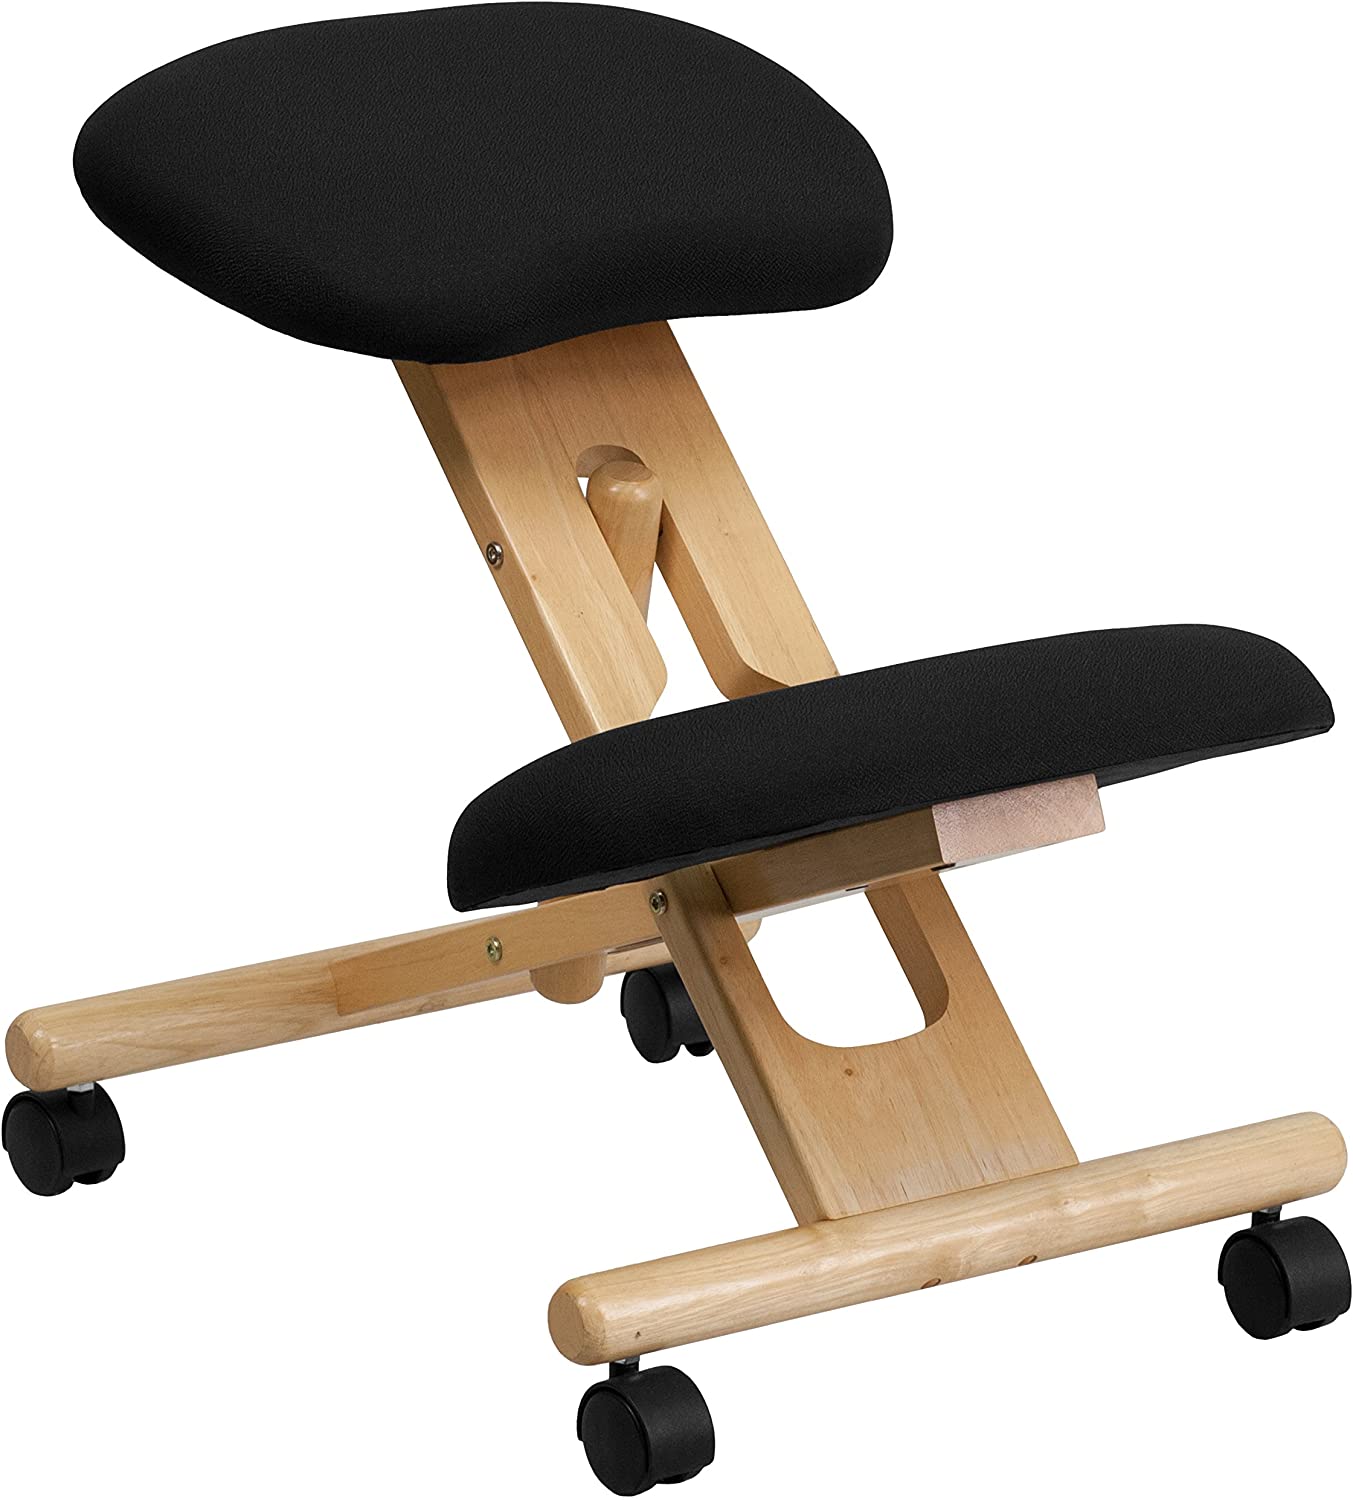 Adjustable Wooden Kneeling Chair